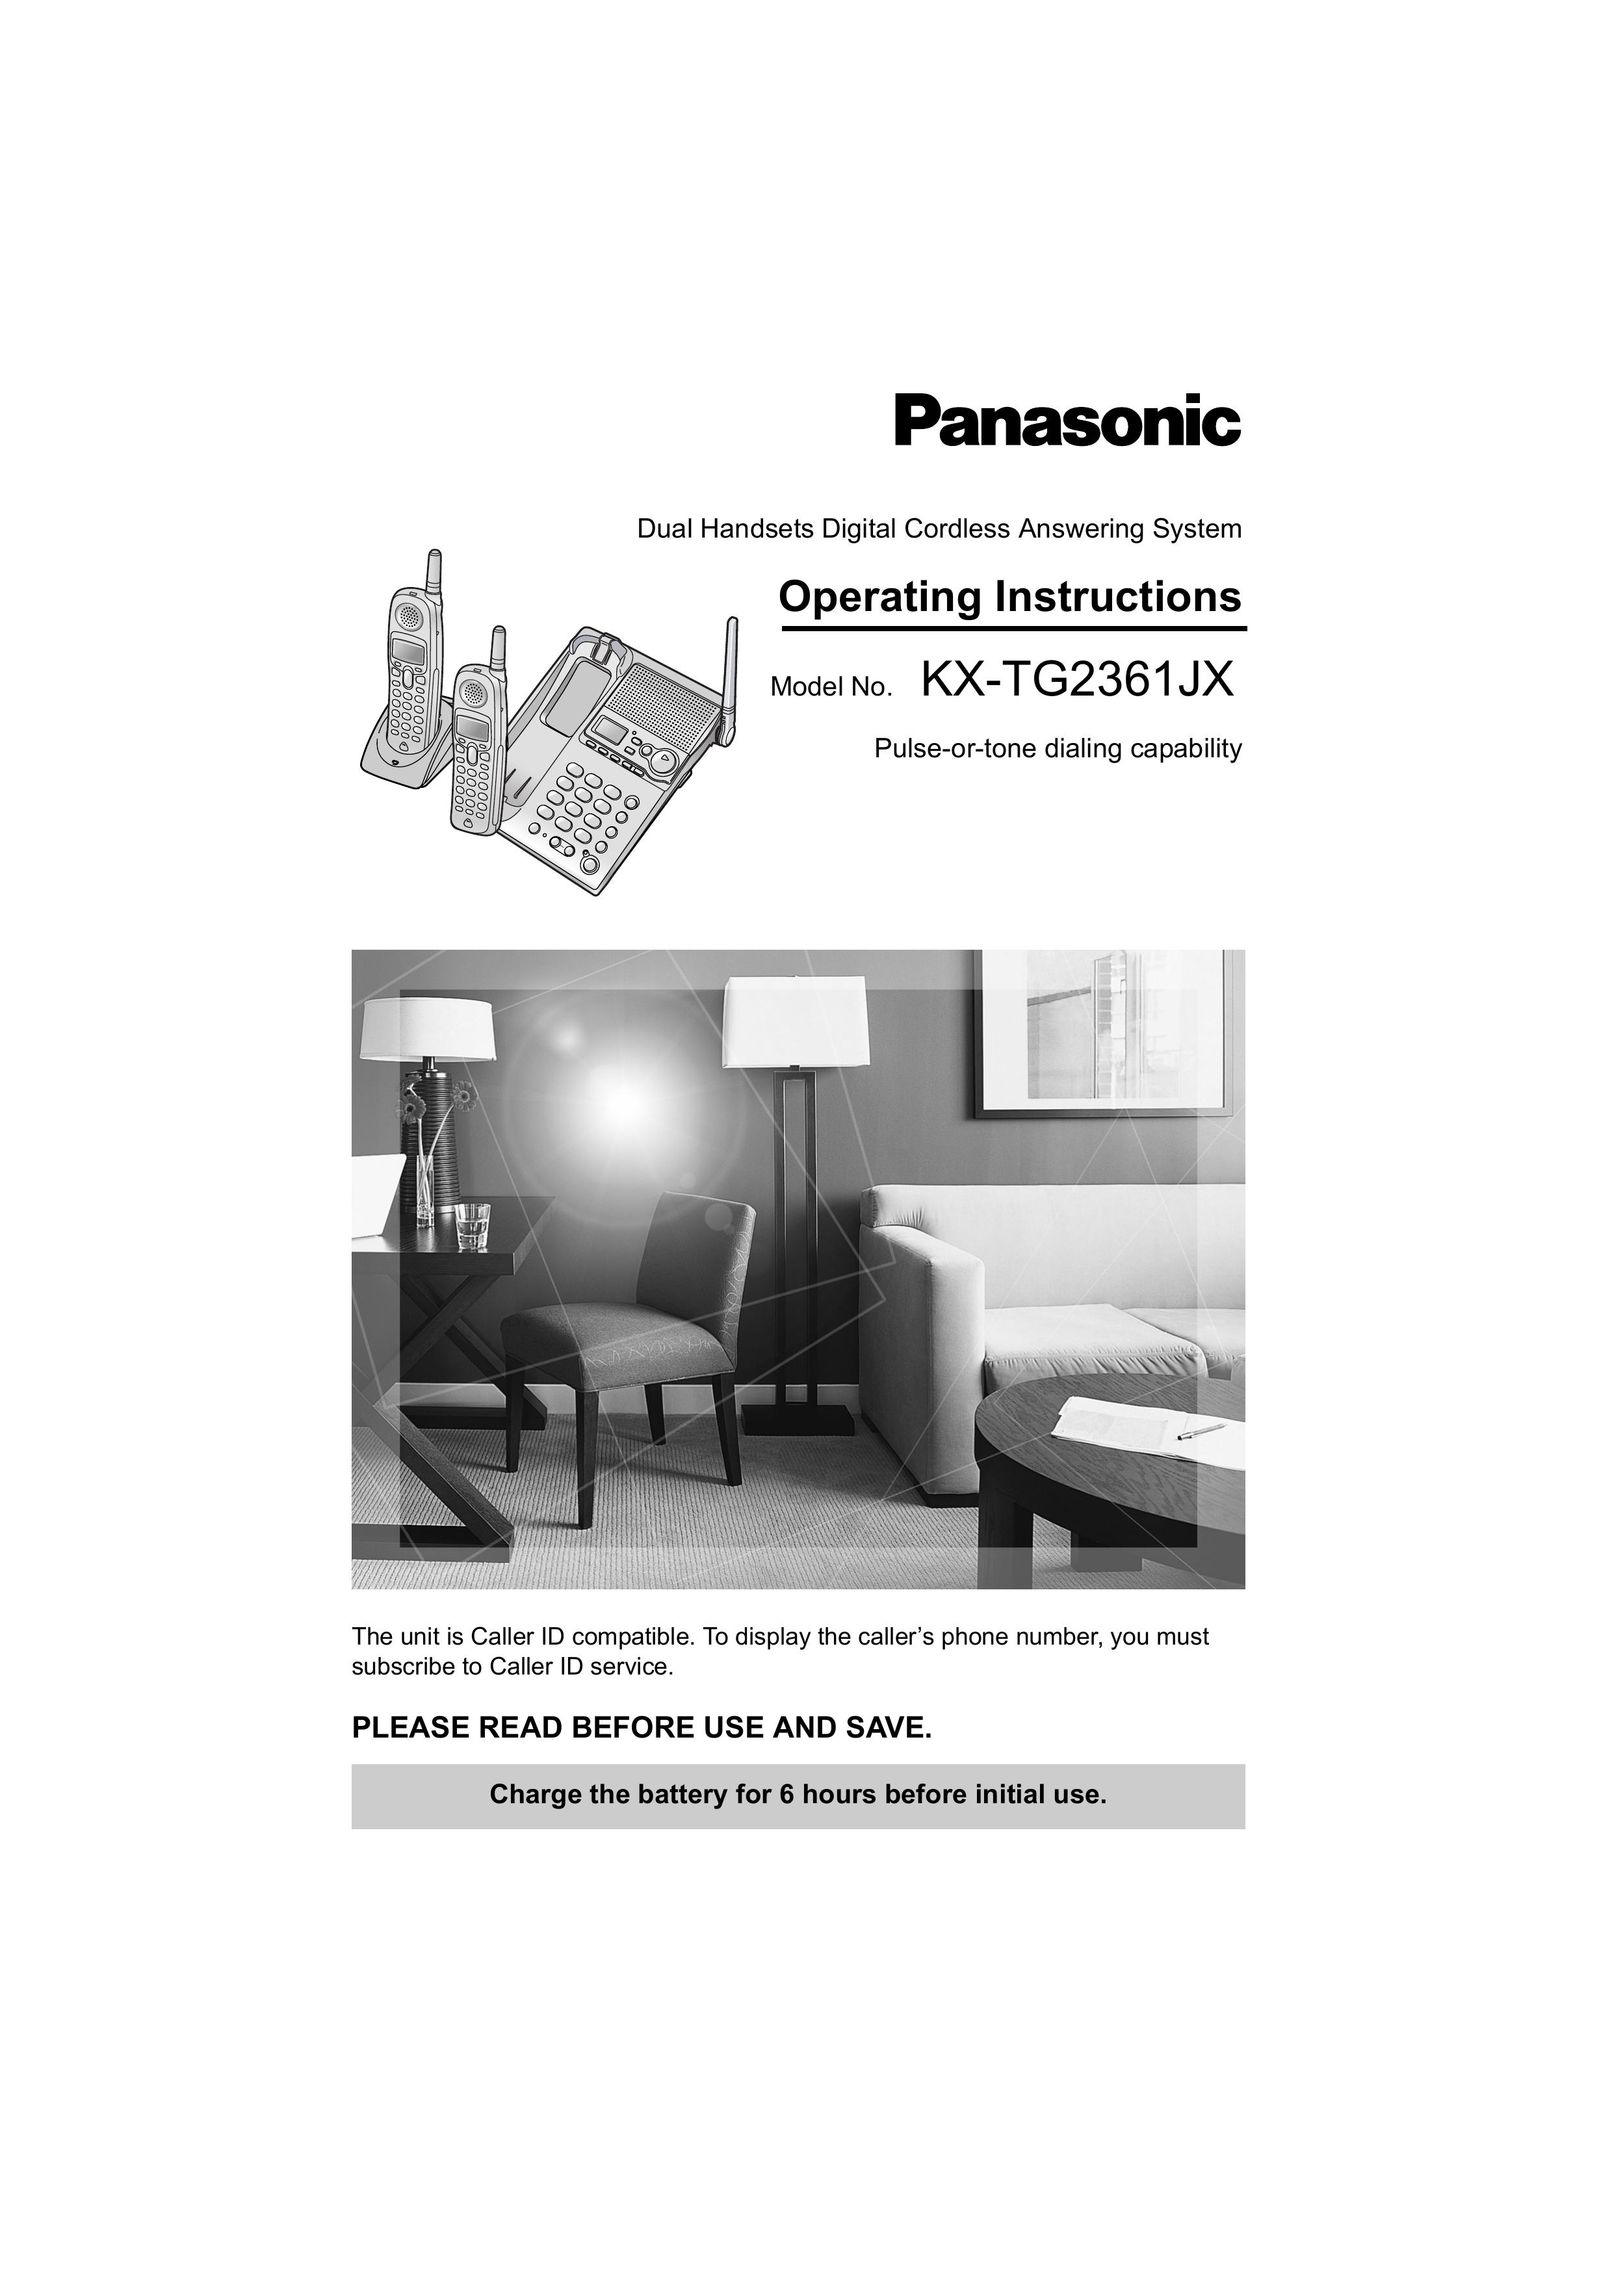 Panasonic KX-TG2361JX Cordless Telephone User Manual